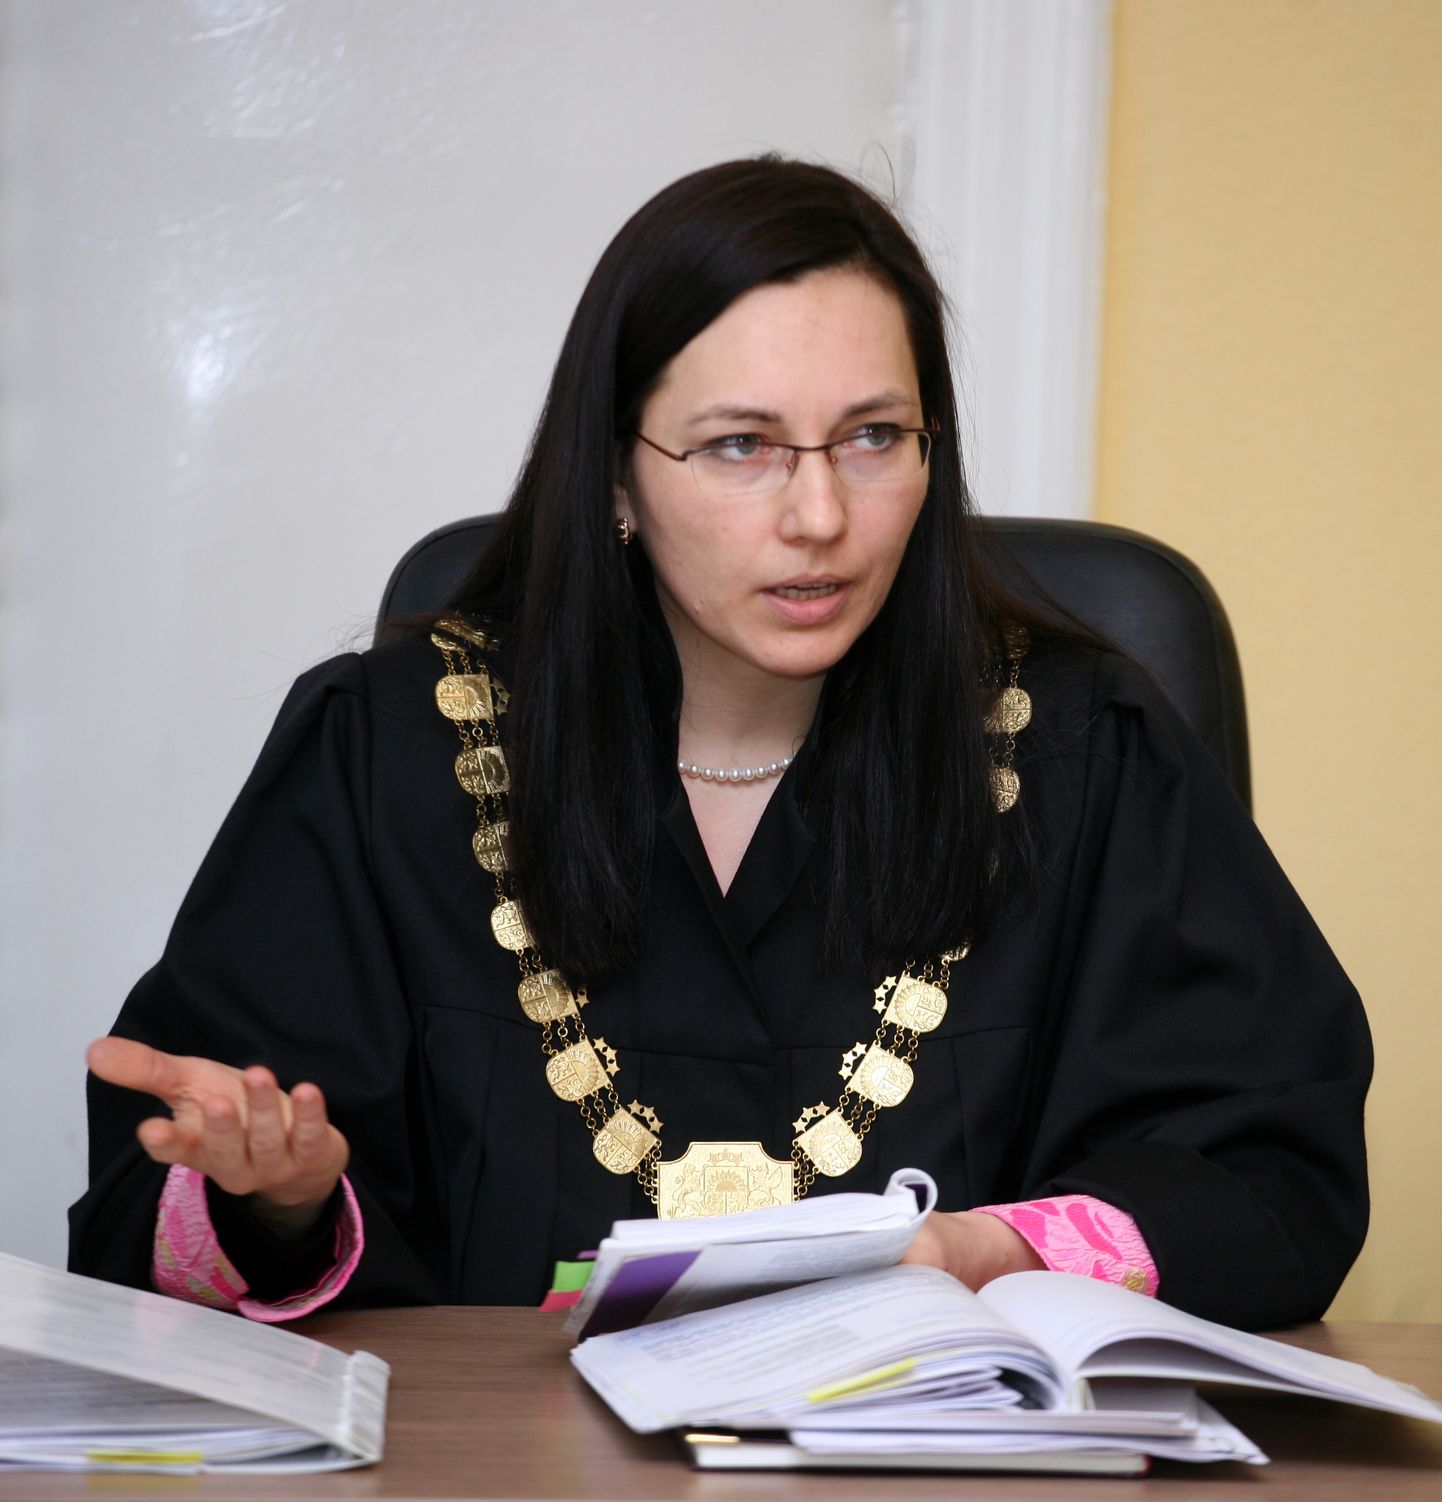 Administratīvās rajona tiesas priekšsēdētāja Ilze Freimane piedalās Administratīvās rajona tiesas sēdē, kurā izskata Rīgas domes aizliegumu rīkot visus 16.martā pieteiktos pasākumus.